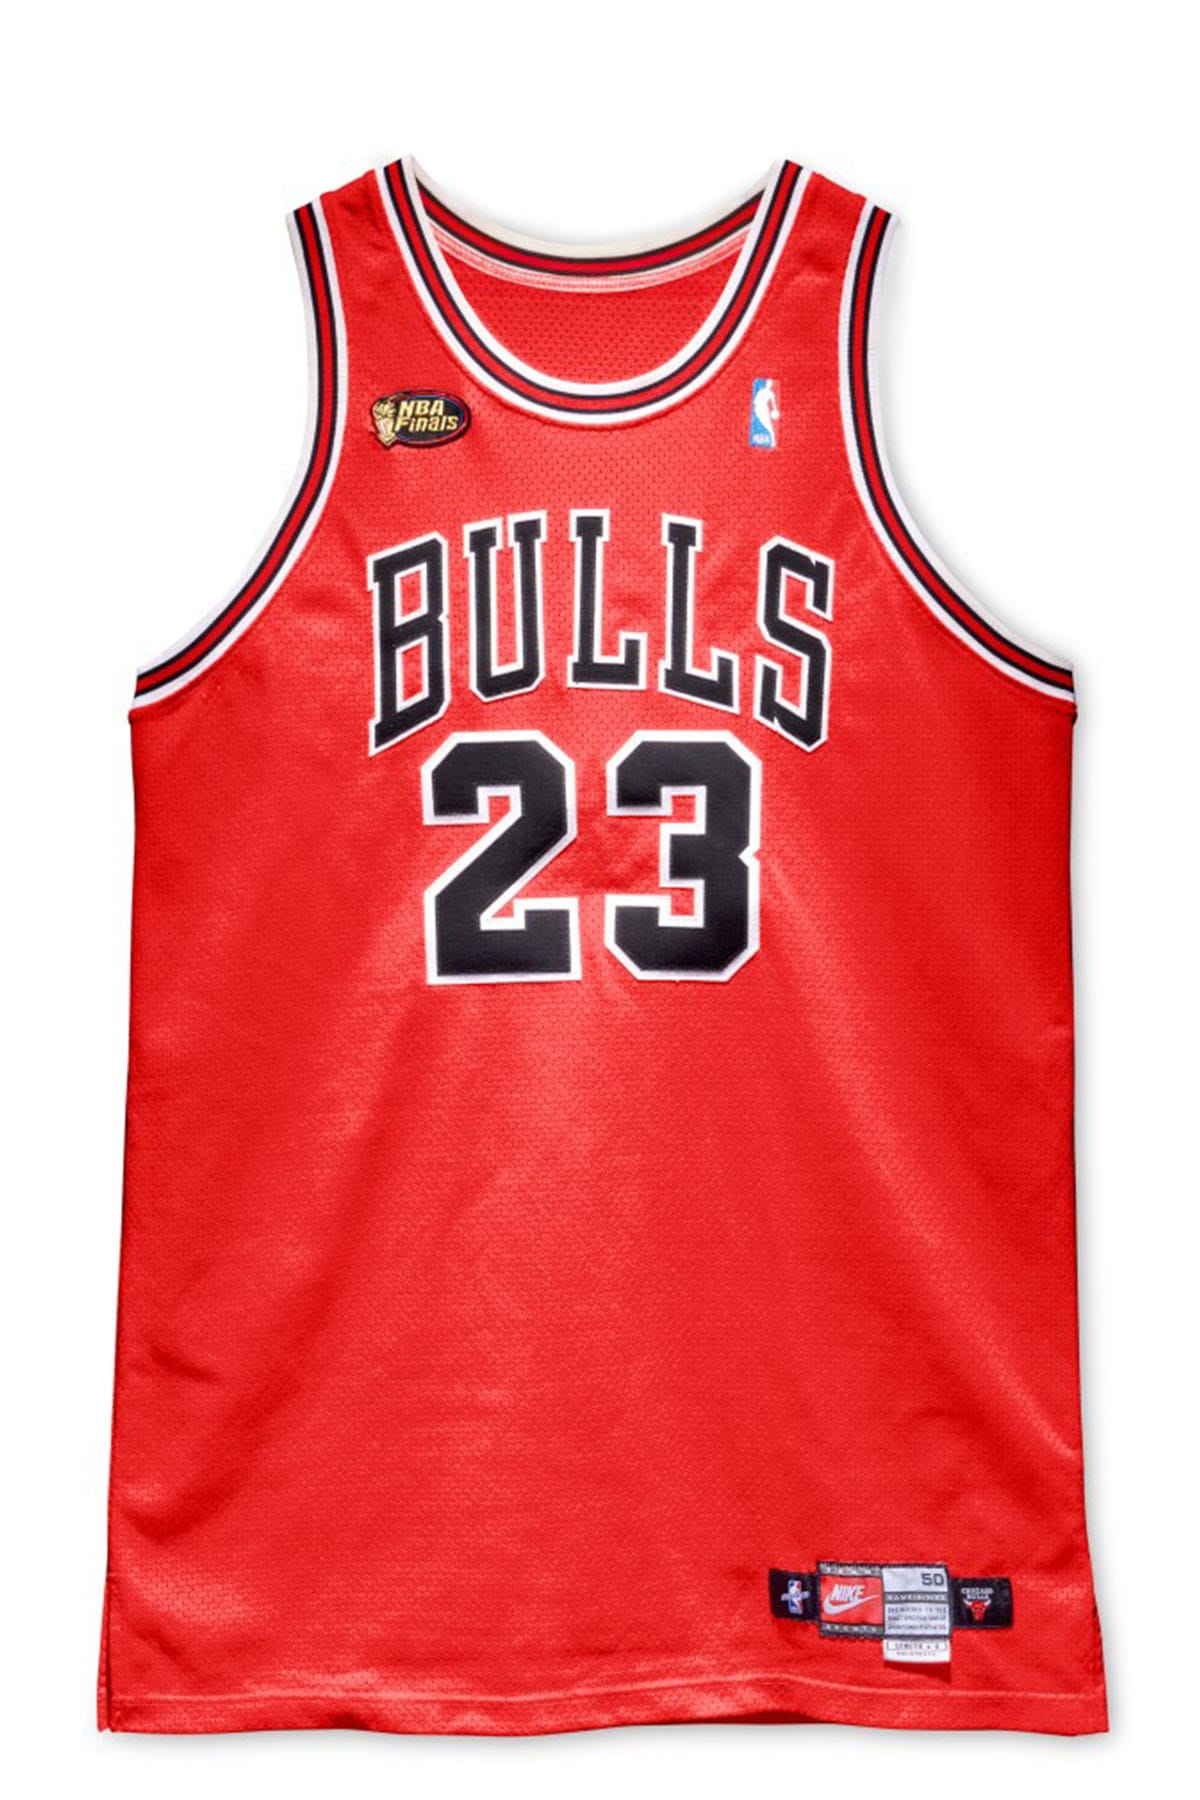 MJの98年NBAファイナル着用ジャージが14億円超えで落札される